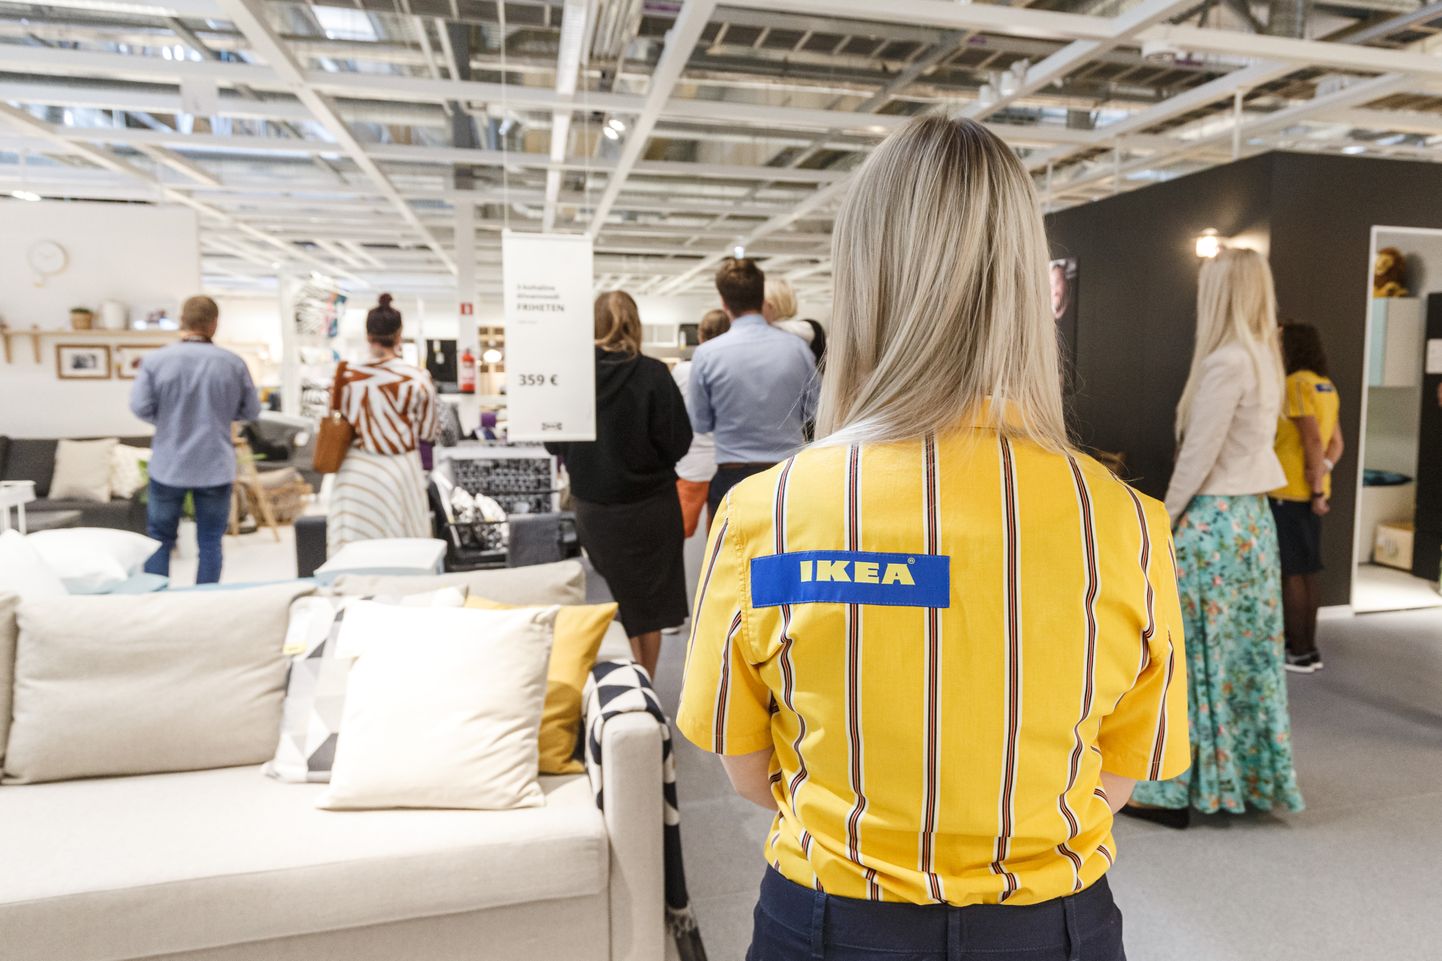 Rootsi mööblifirma IKEA avamiseelne meediapäev Tallinnas avatavas väljastuspunktis ning näidistesaalis.